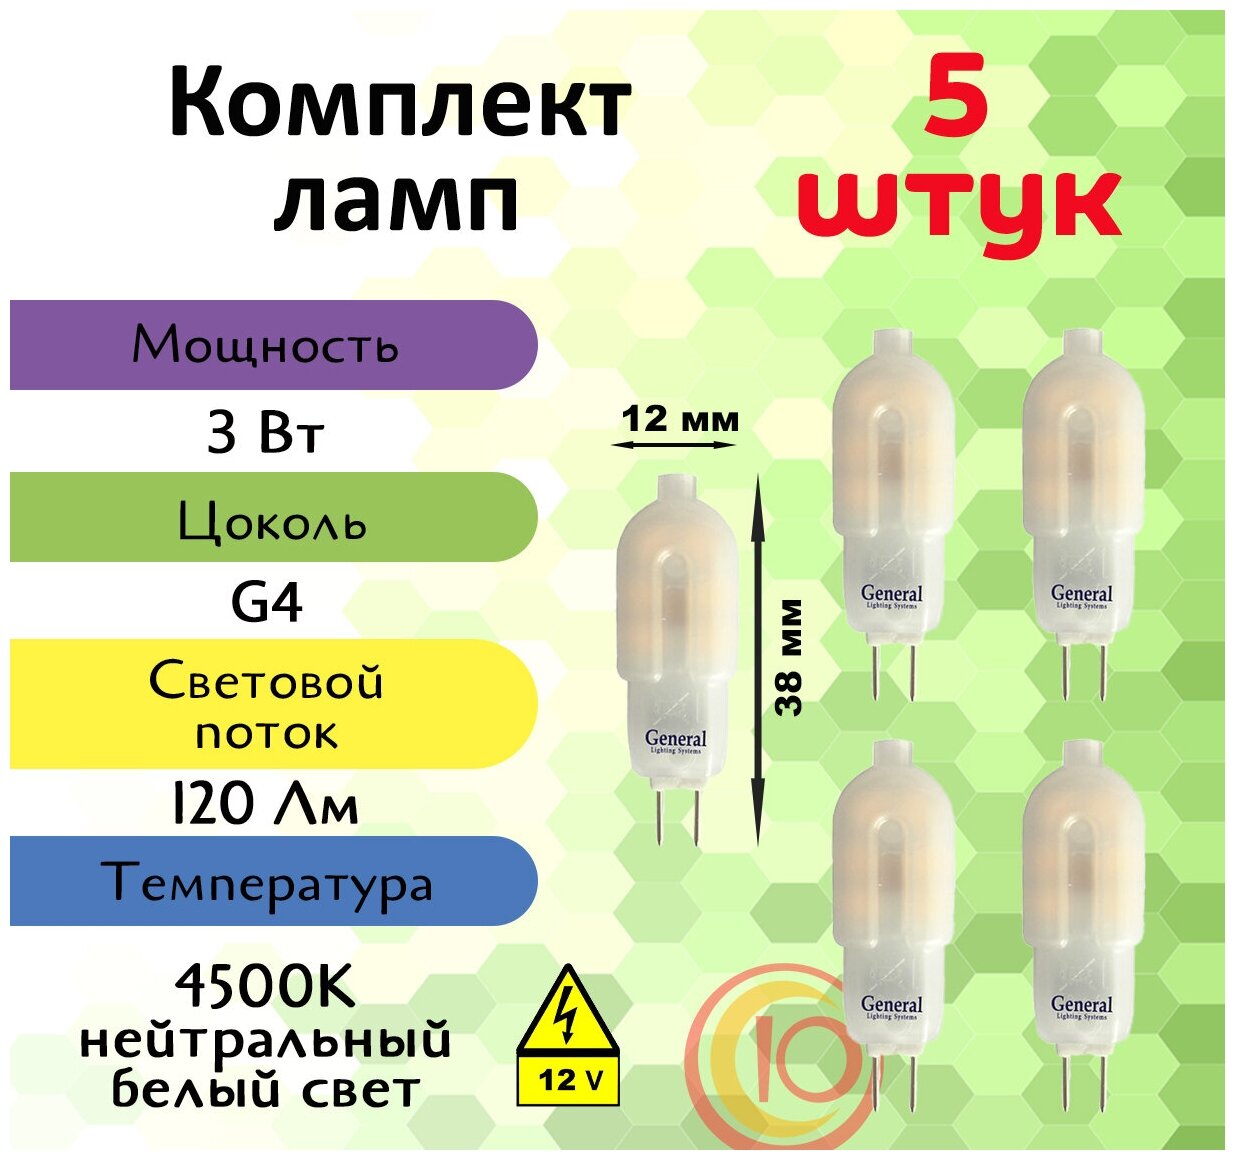 Лампочка светодиодная 12 вольт, General, Комплект из 5 шт, 3 Вт, Цоколь G4, 4500К, Форма лампы Капсула, G4